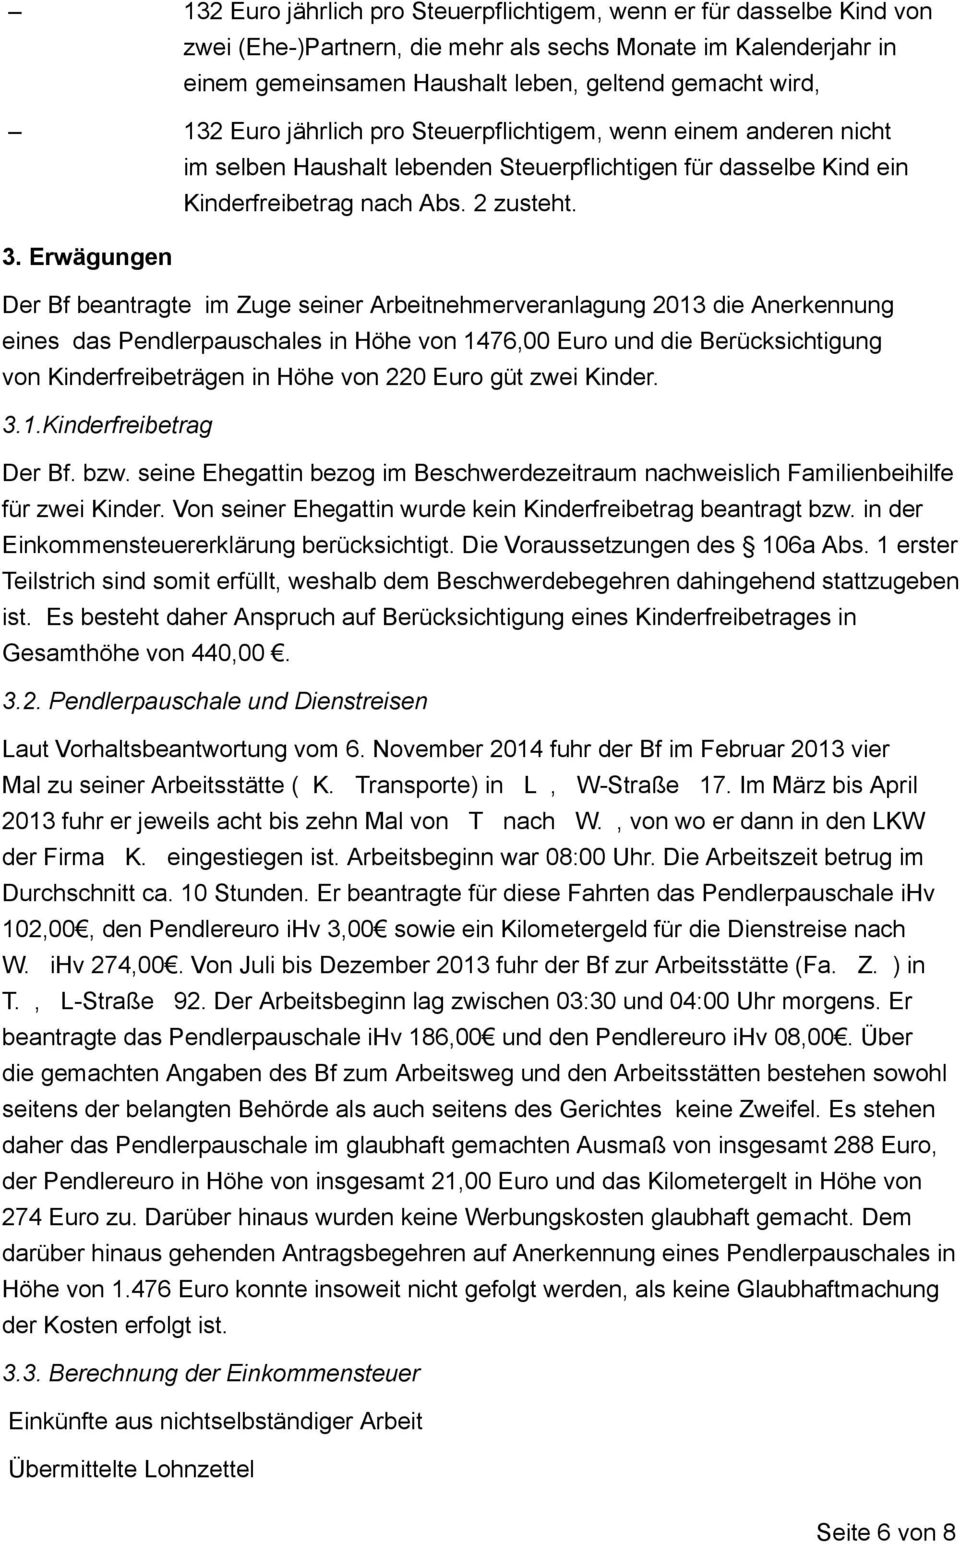 Erwägungen Der Bf beantragte im Zuge seiner Arbeitnehmerveranlagung 2013 die Anerkennung eines das Pendlerpauschales in Höhe von 1476,00 Euro und die Berücksichtigung von Kinderfreibeträgen in Höhe